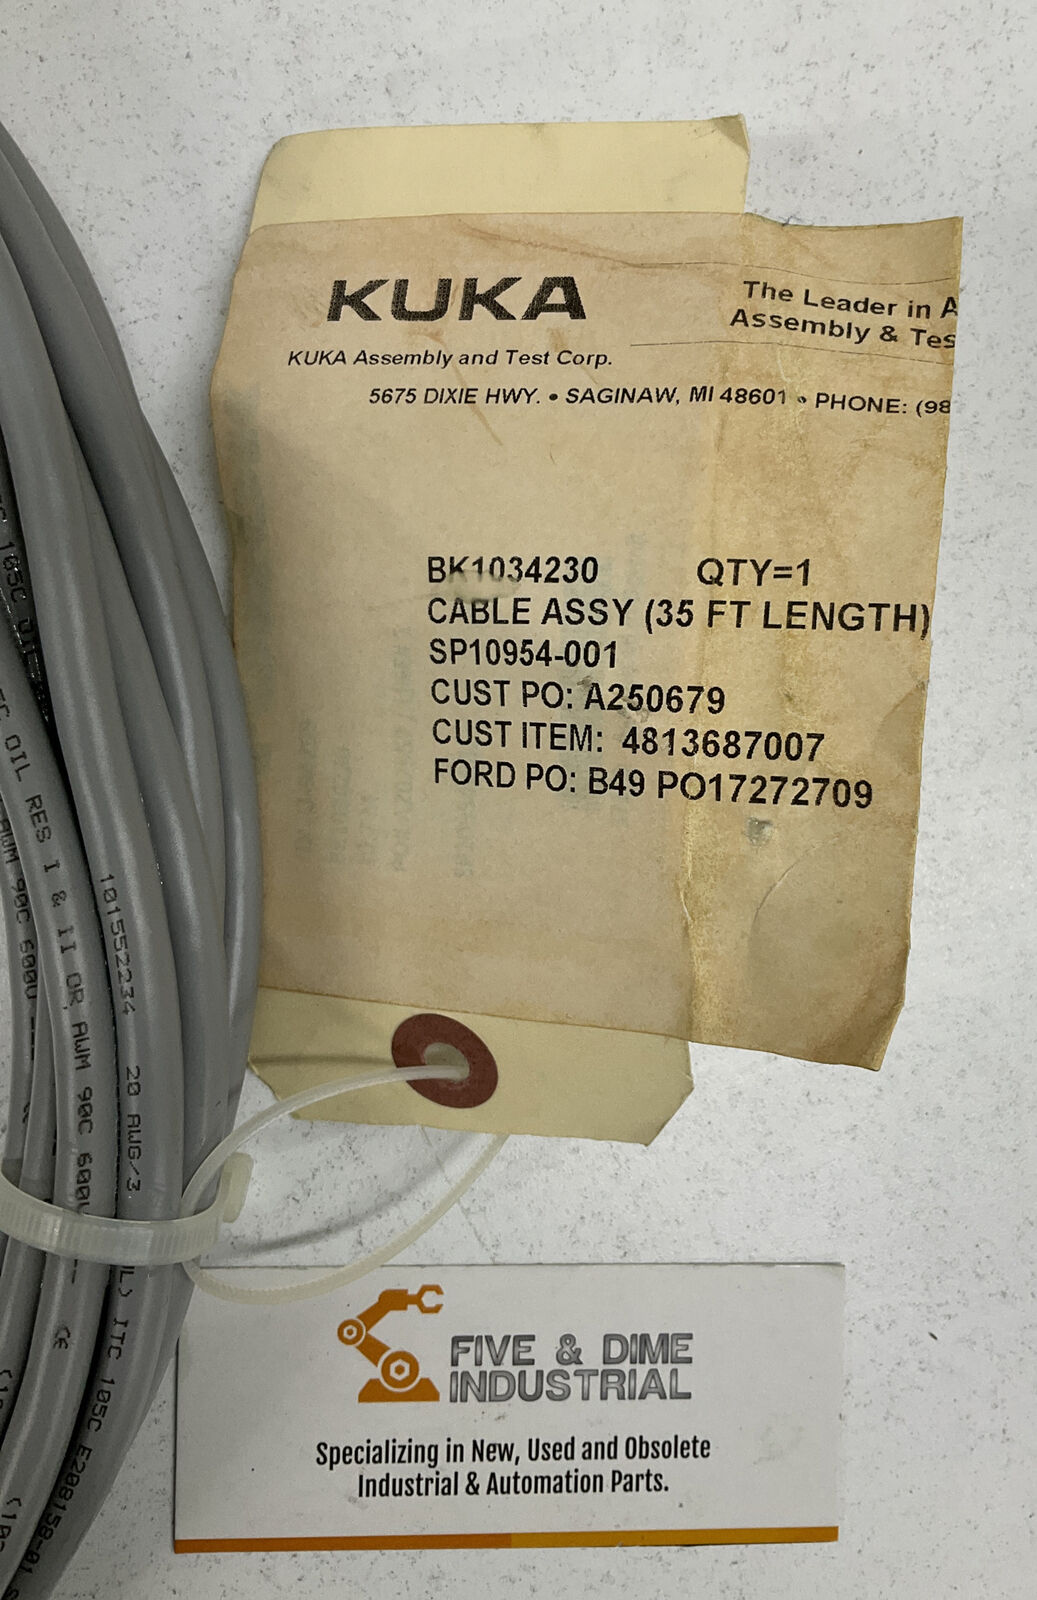 KUKA BK1034230 New Cable Assembly 35FT (CBL126) - 0